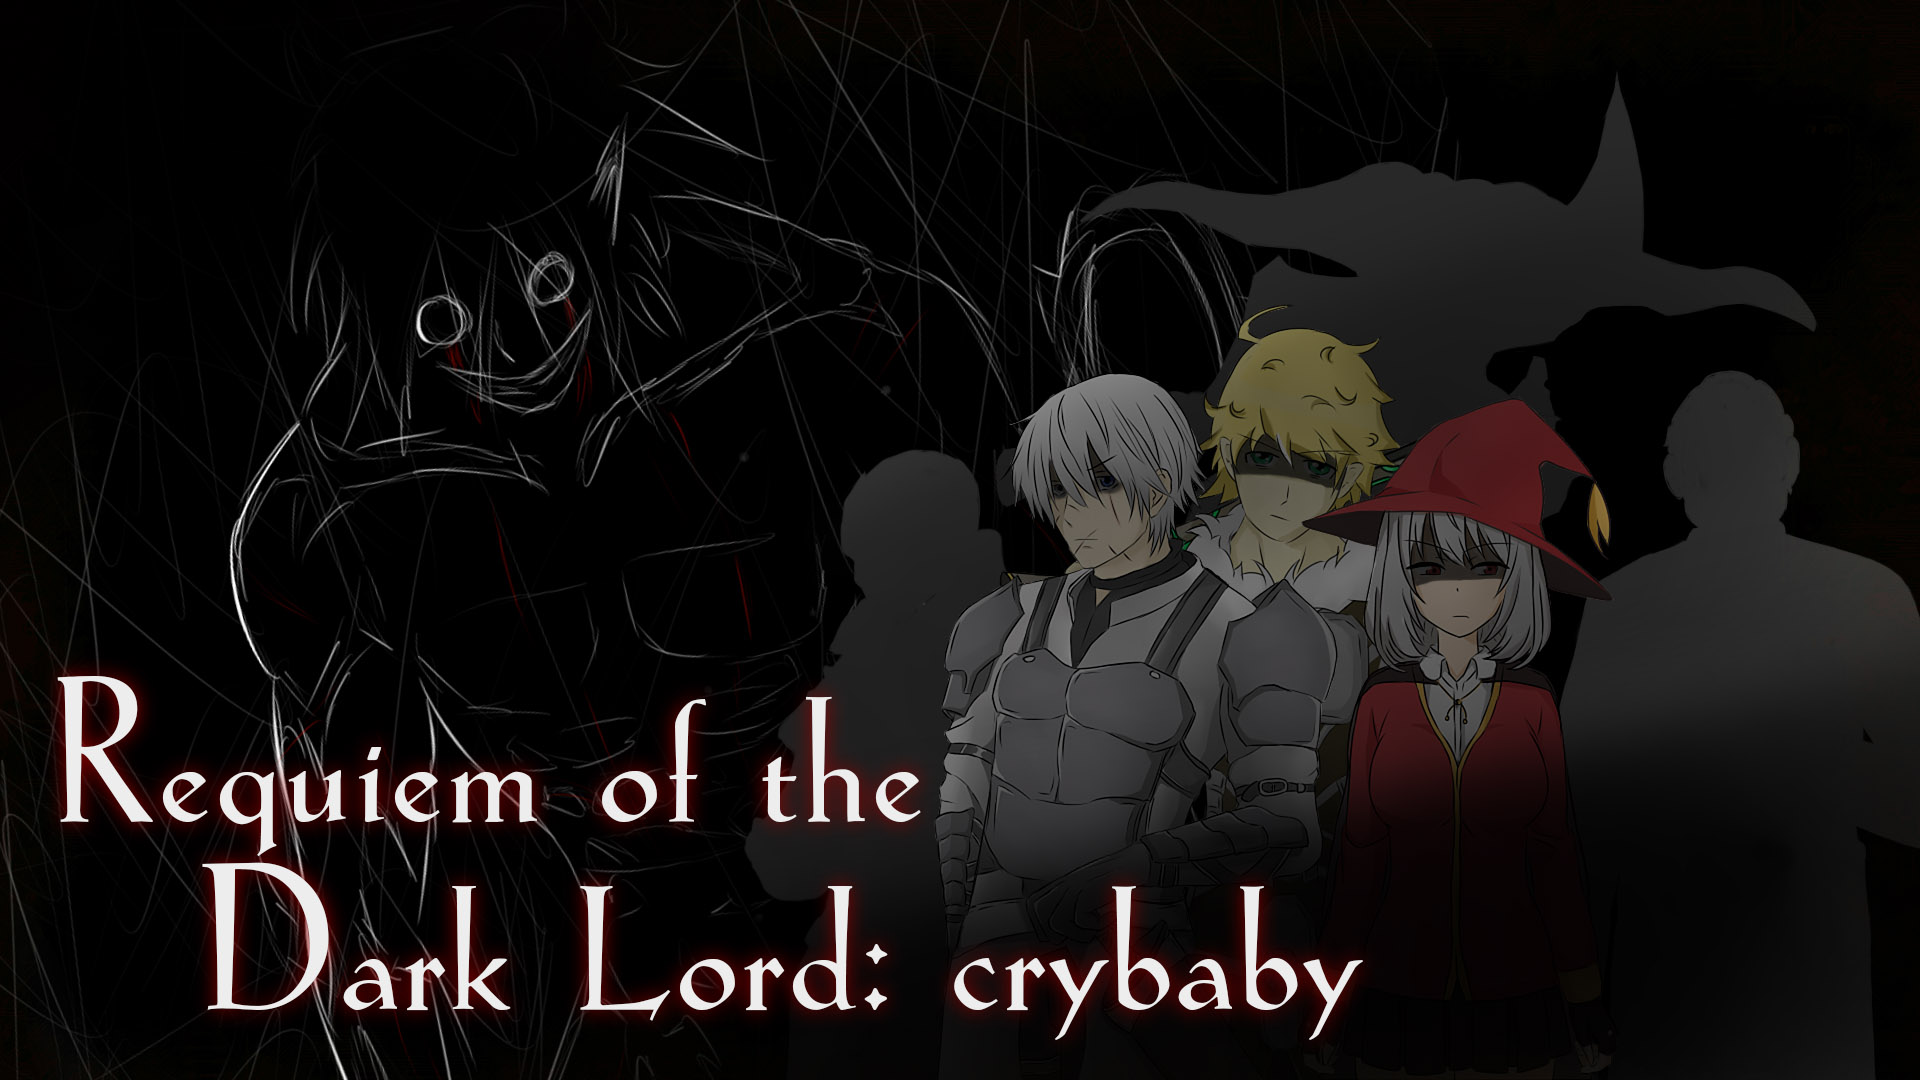 Реквием Темного Лорда: плакса. /  Requiem of the Dark Lord: crybaby.